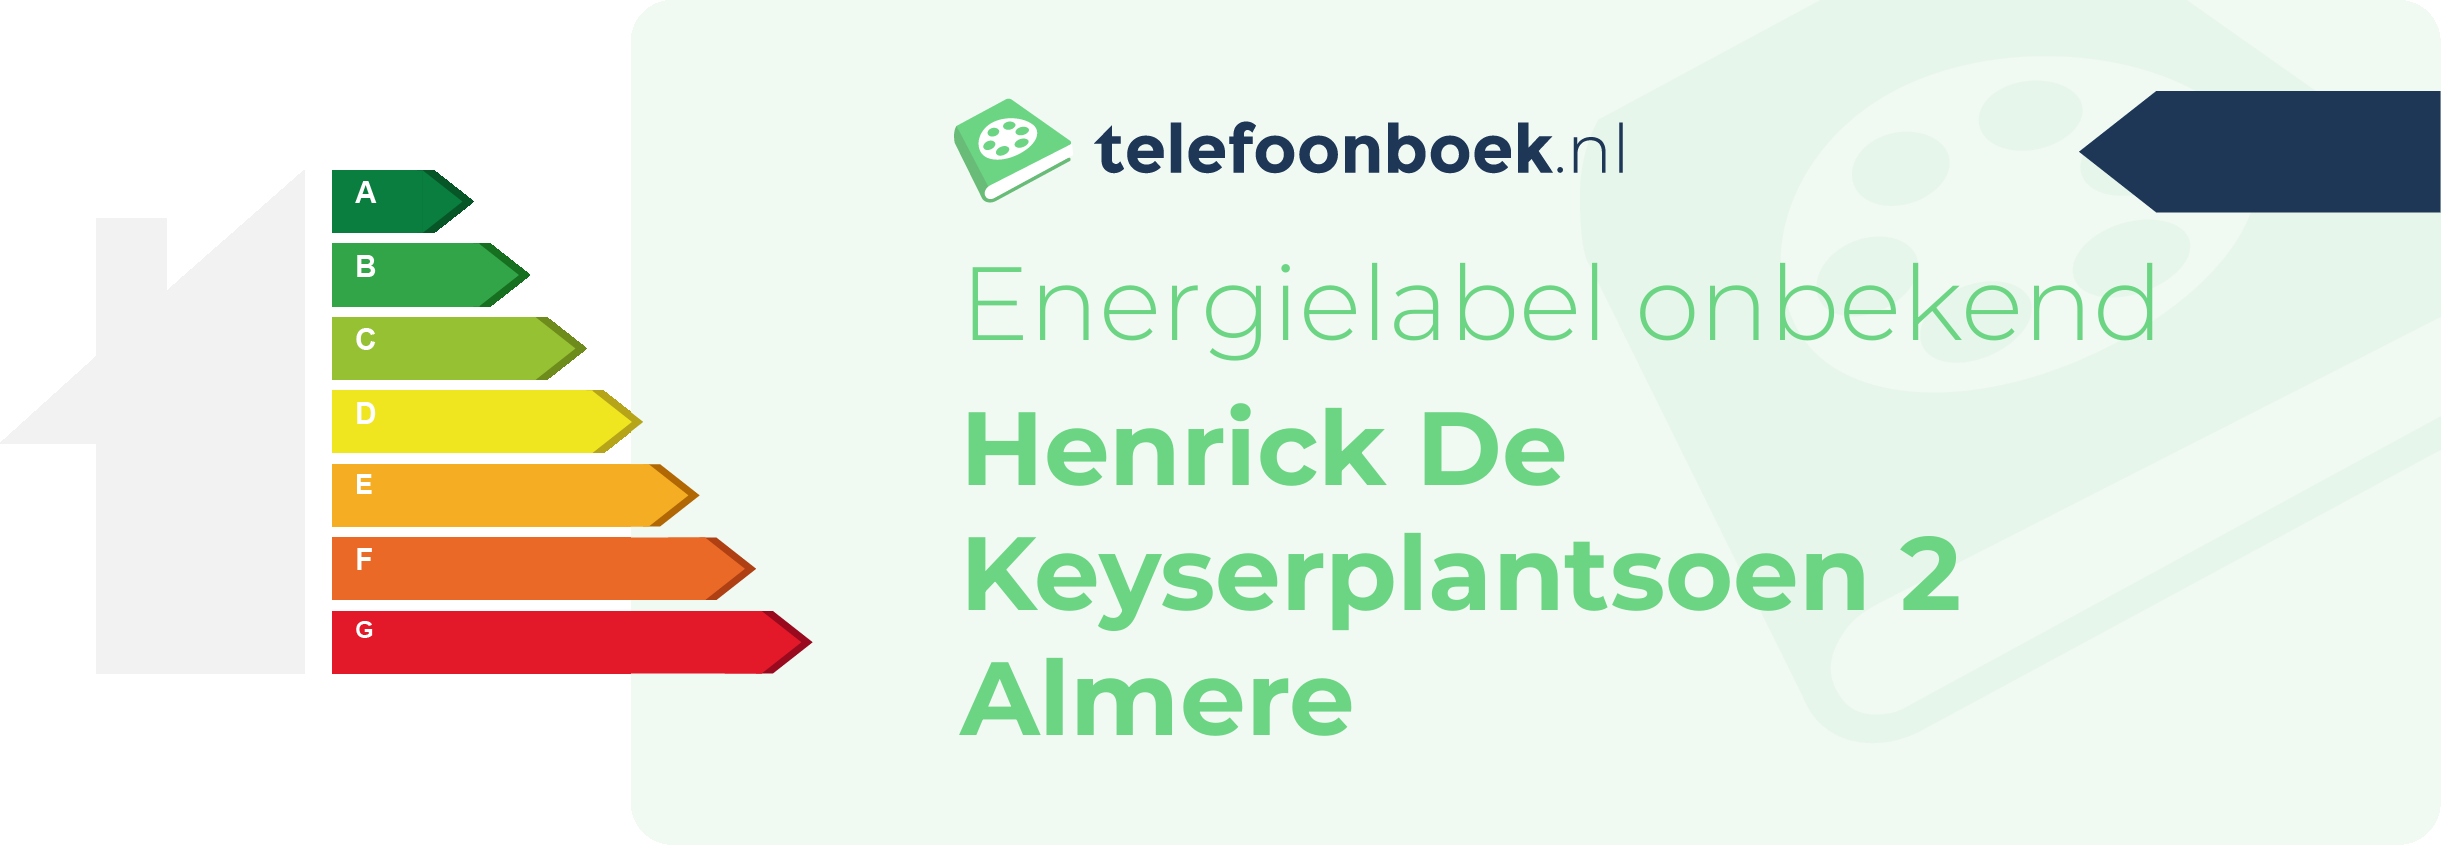 Energielabel Henrick De Keyserplantsoen 2 Almere